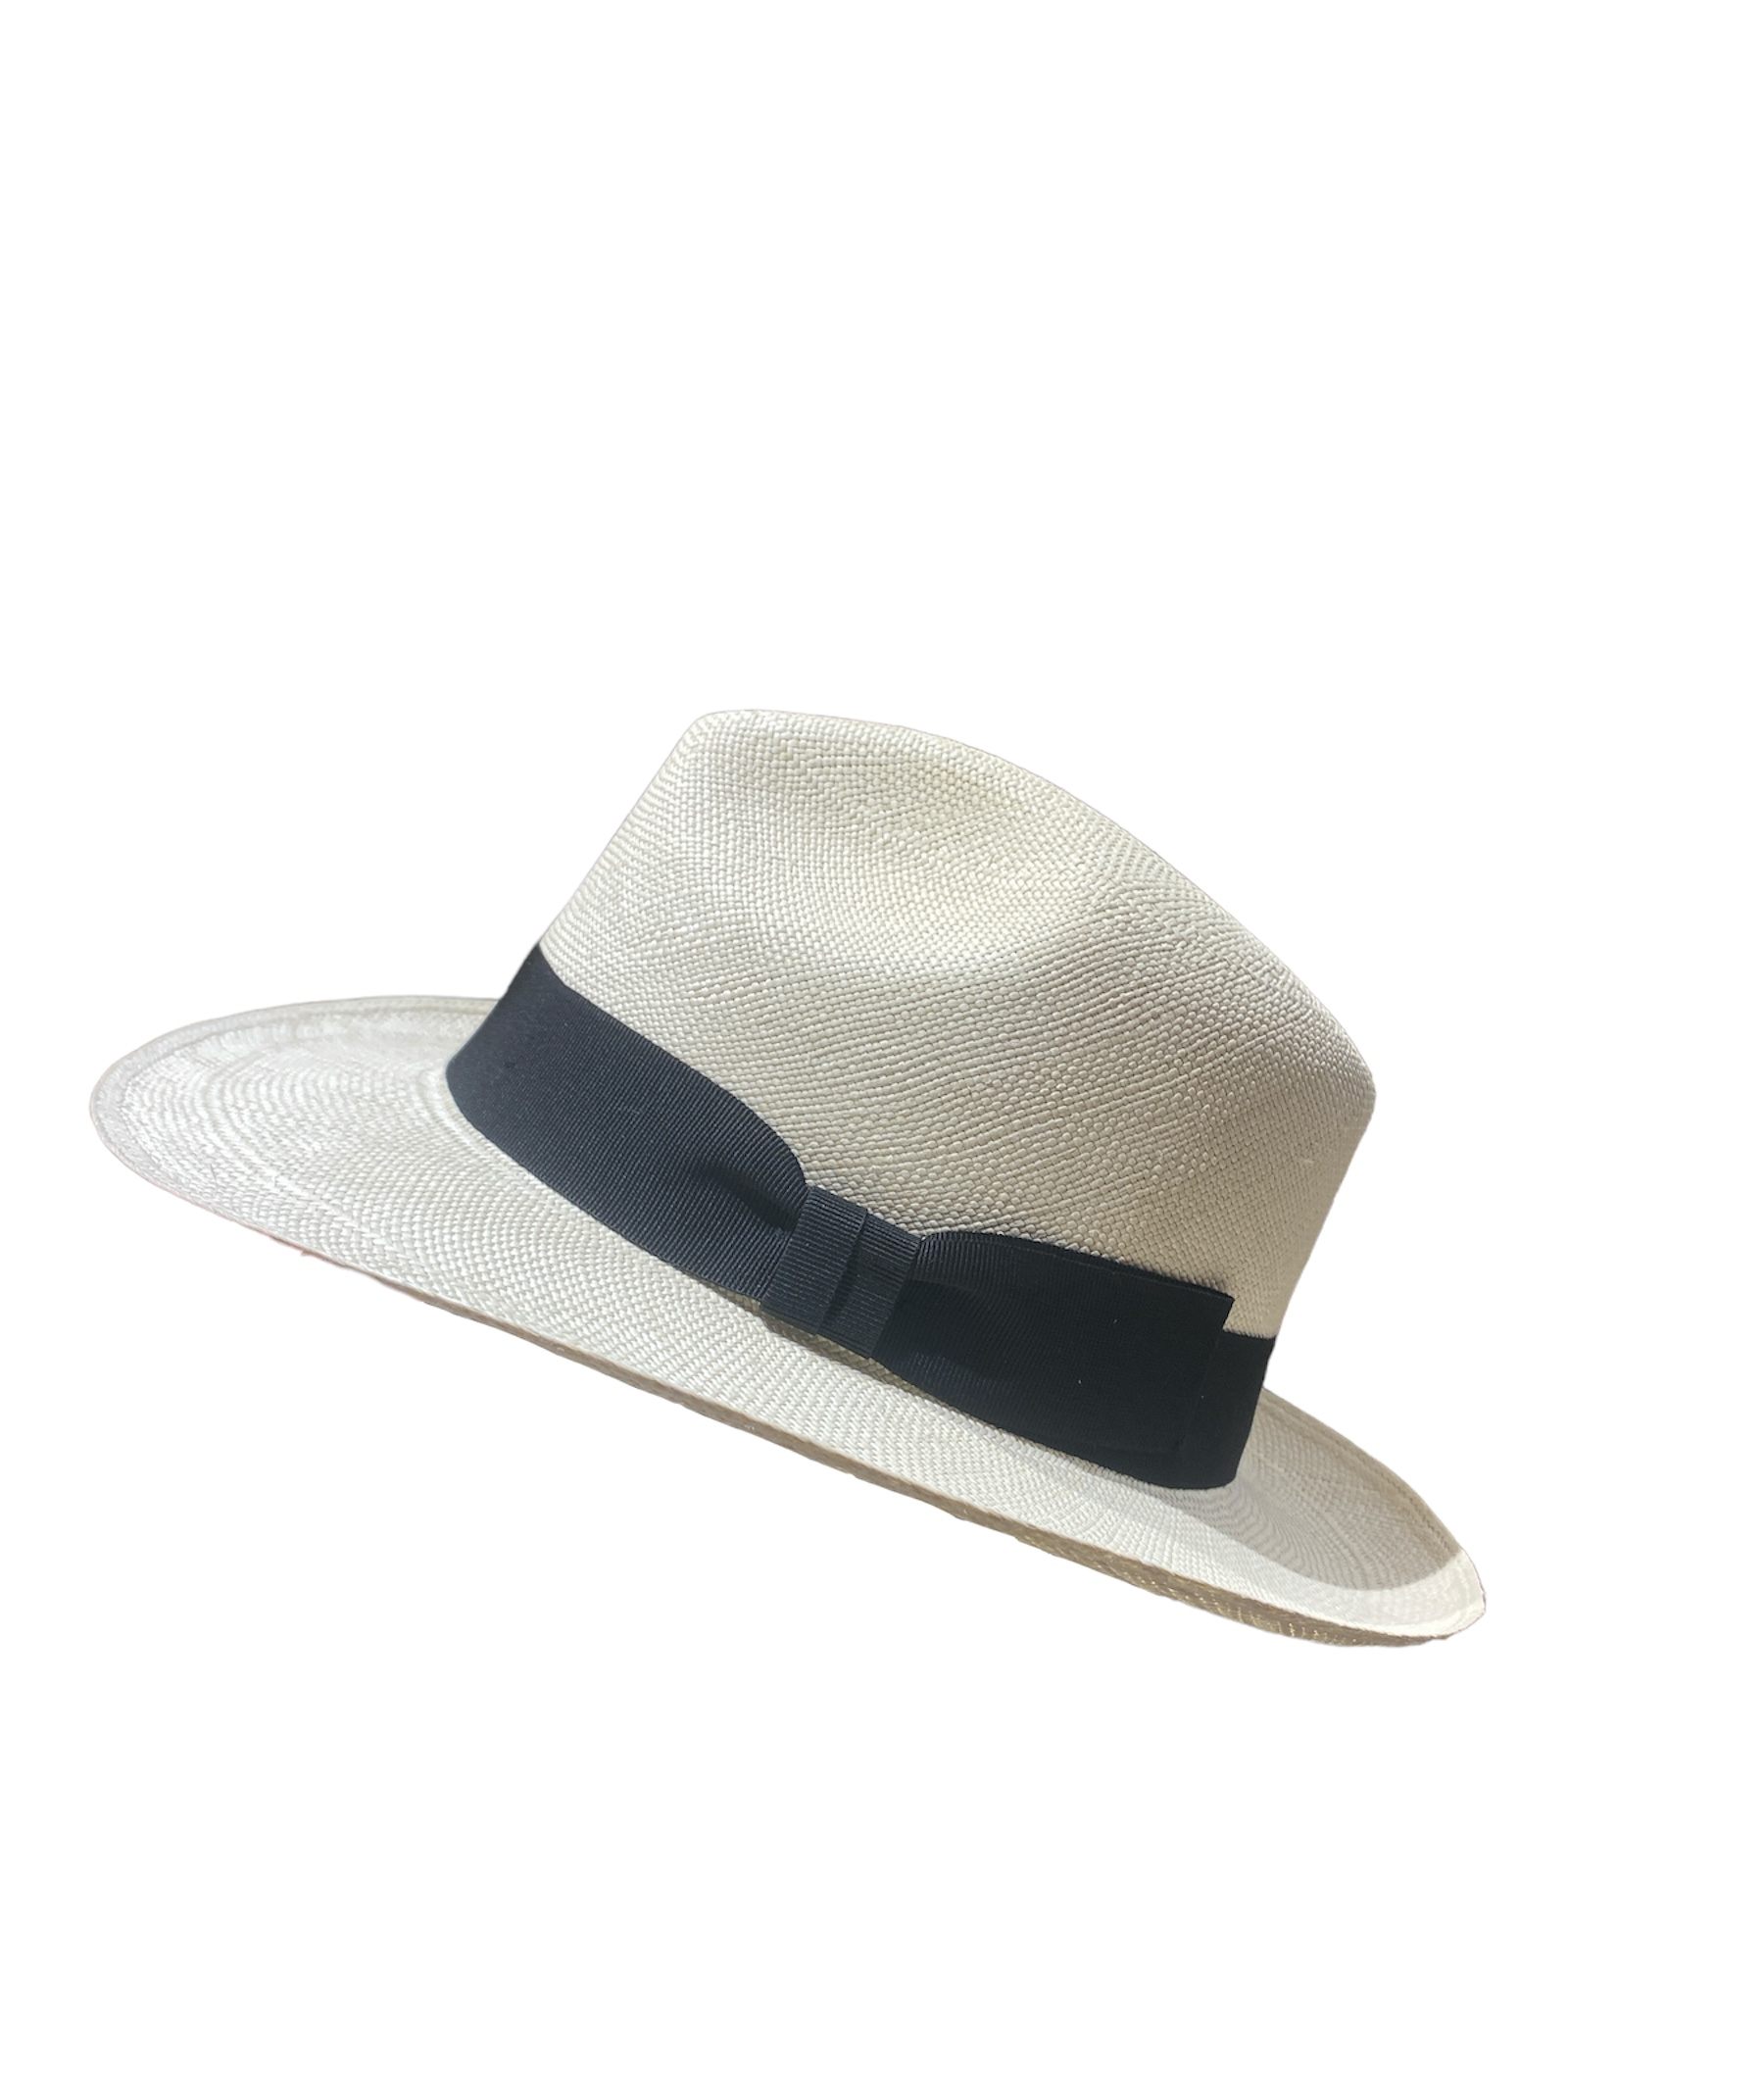 Chapeau Panama Fino avec ganse noire, disponible en taille 55, 57, 59, 60 et 61